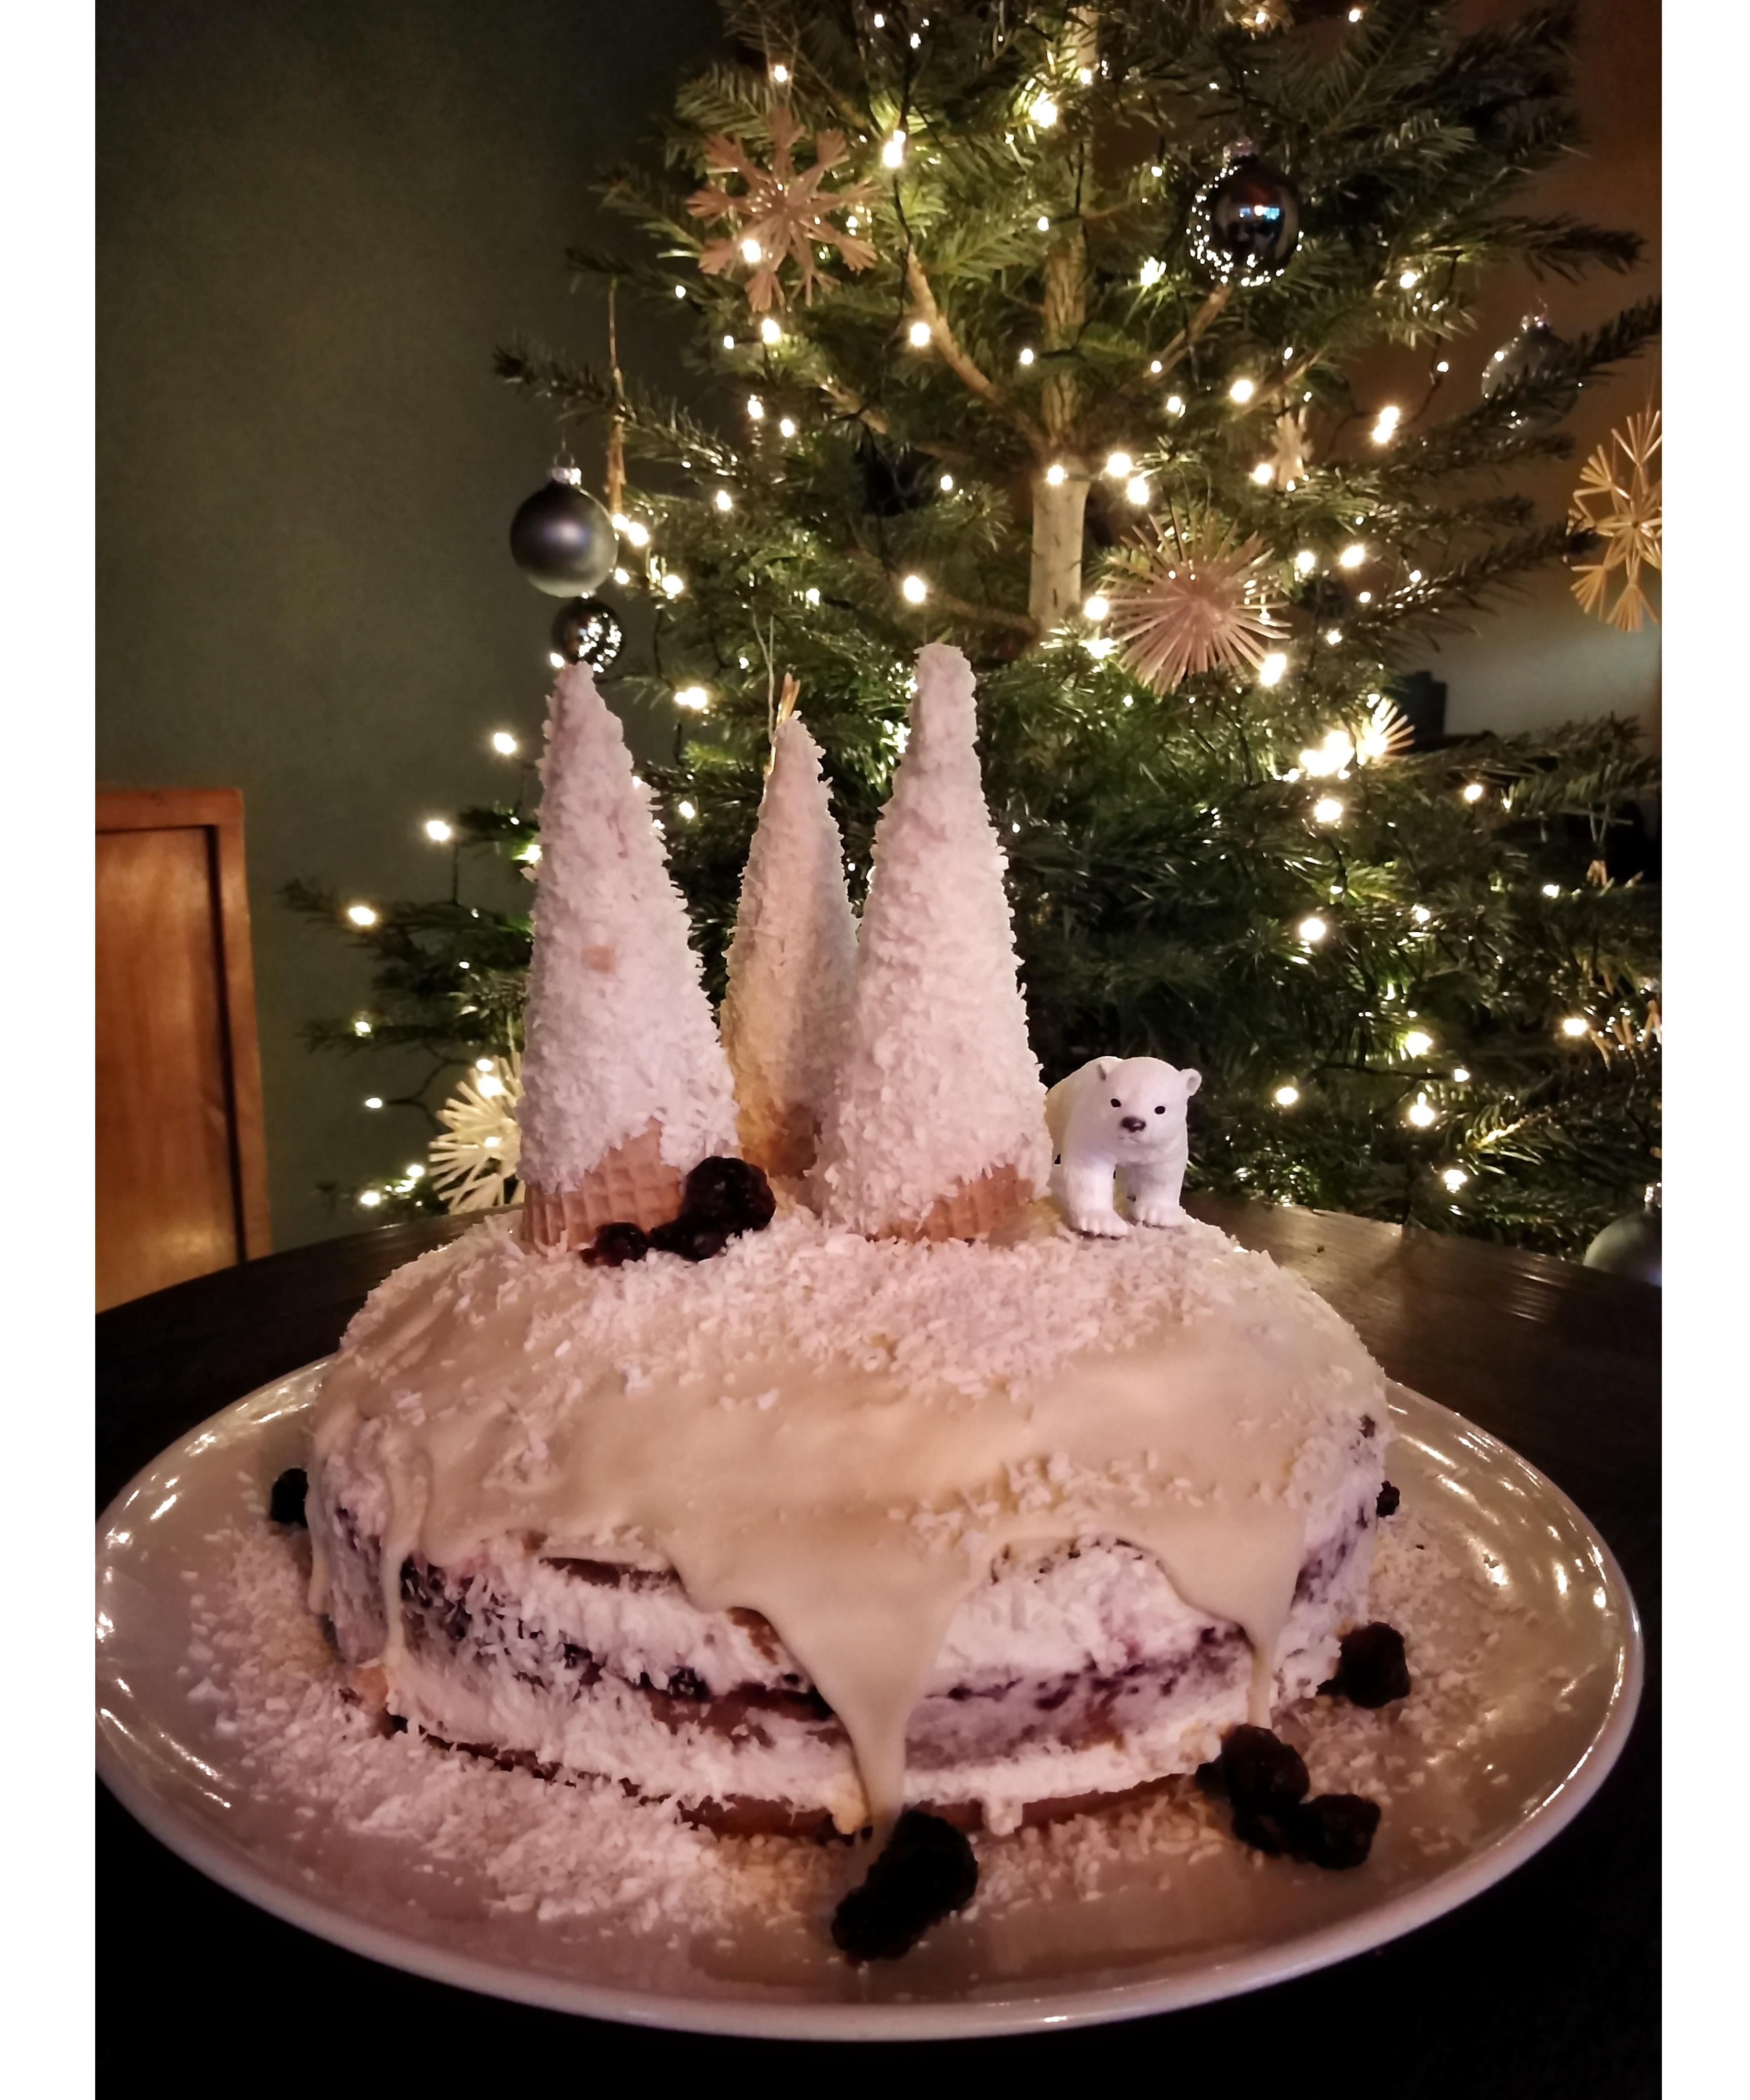 Lebkuchen-Cranberry-Torte oder "Eisbär-Kuchen" wie meine Neffen sagen❄️ #weihnachtstorte #weihnachten